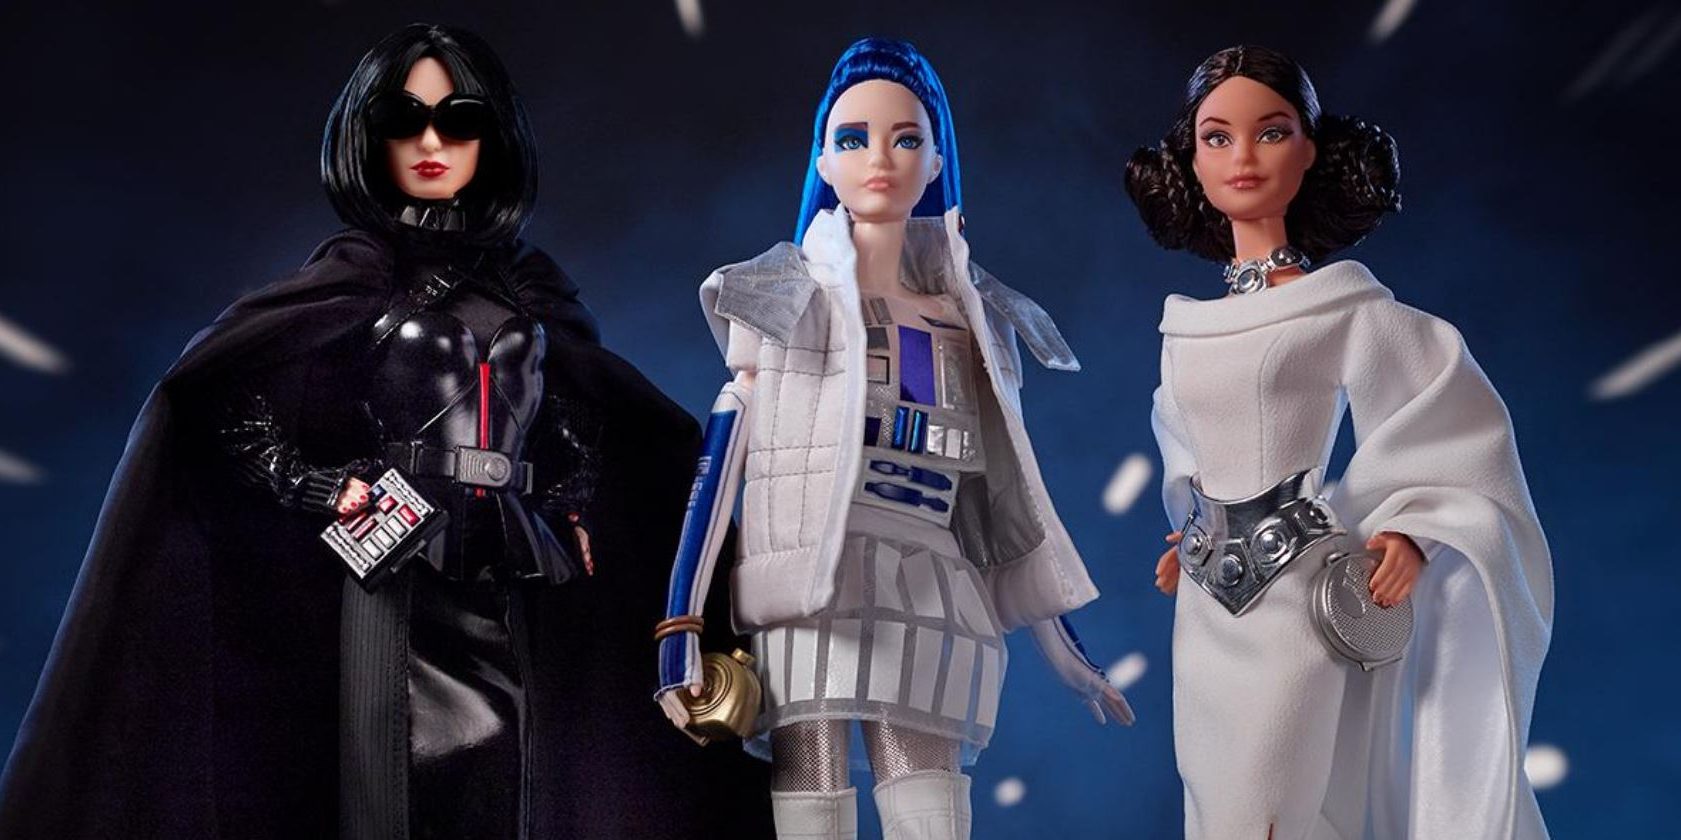 Barbies de otra galaxia: salió a la venta una colección de muñecas de Star Wars